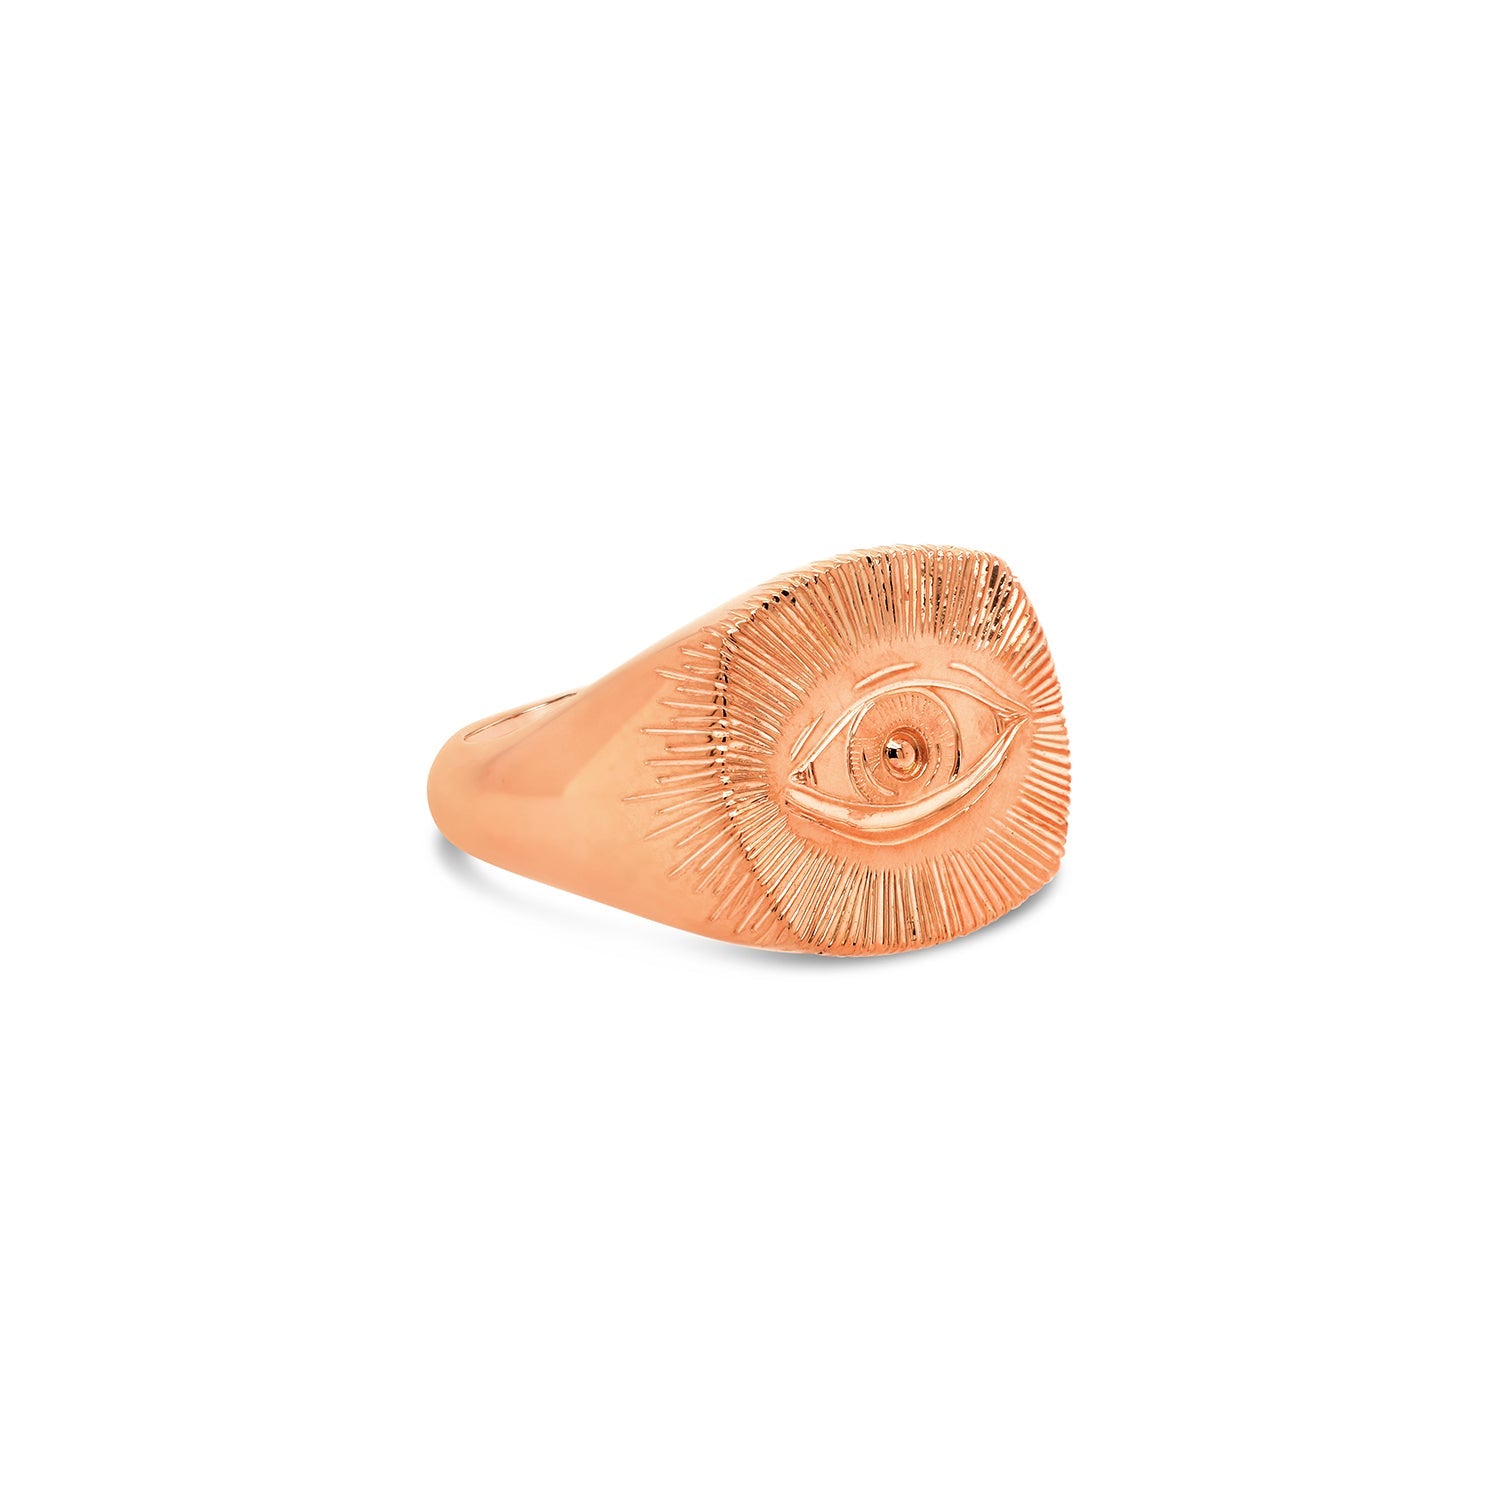 Cushion rose gold signet ring